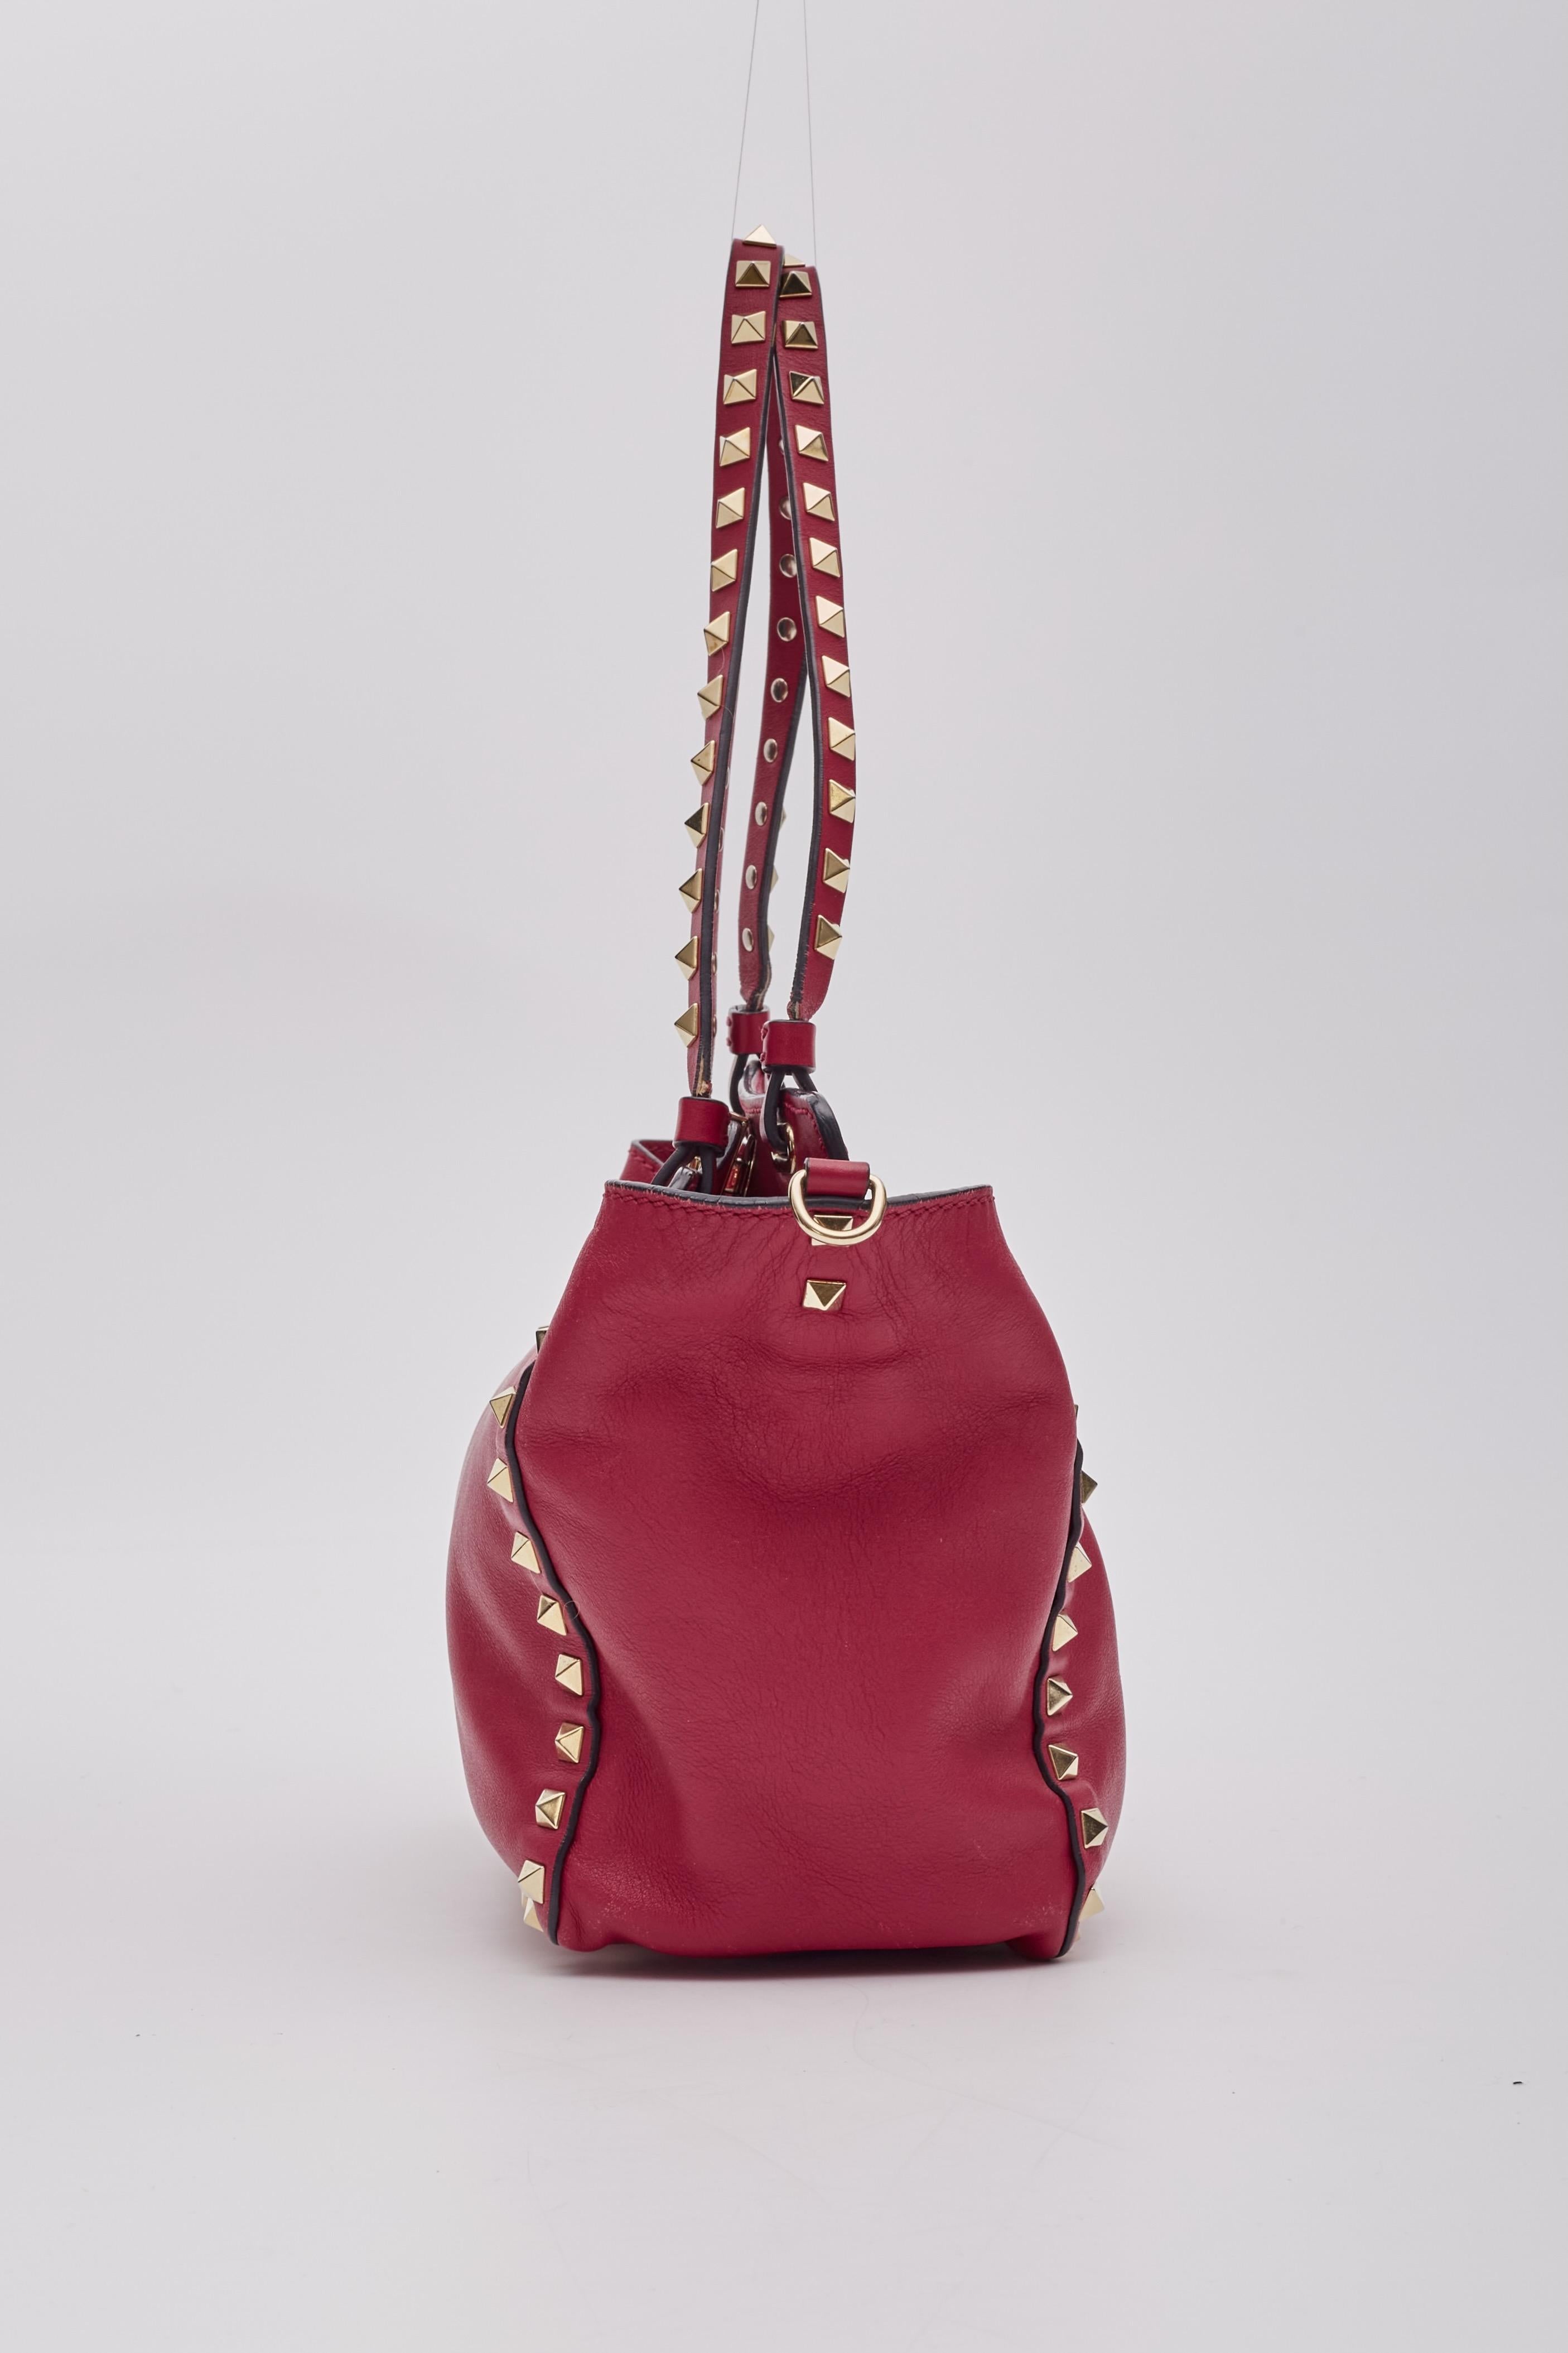 Valentino Garavani Red Leather Rockstud Shoulder Bag 1